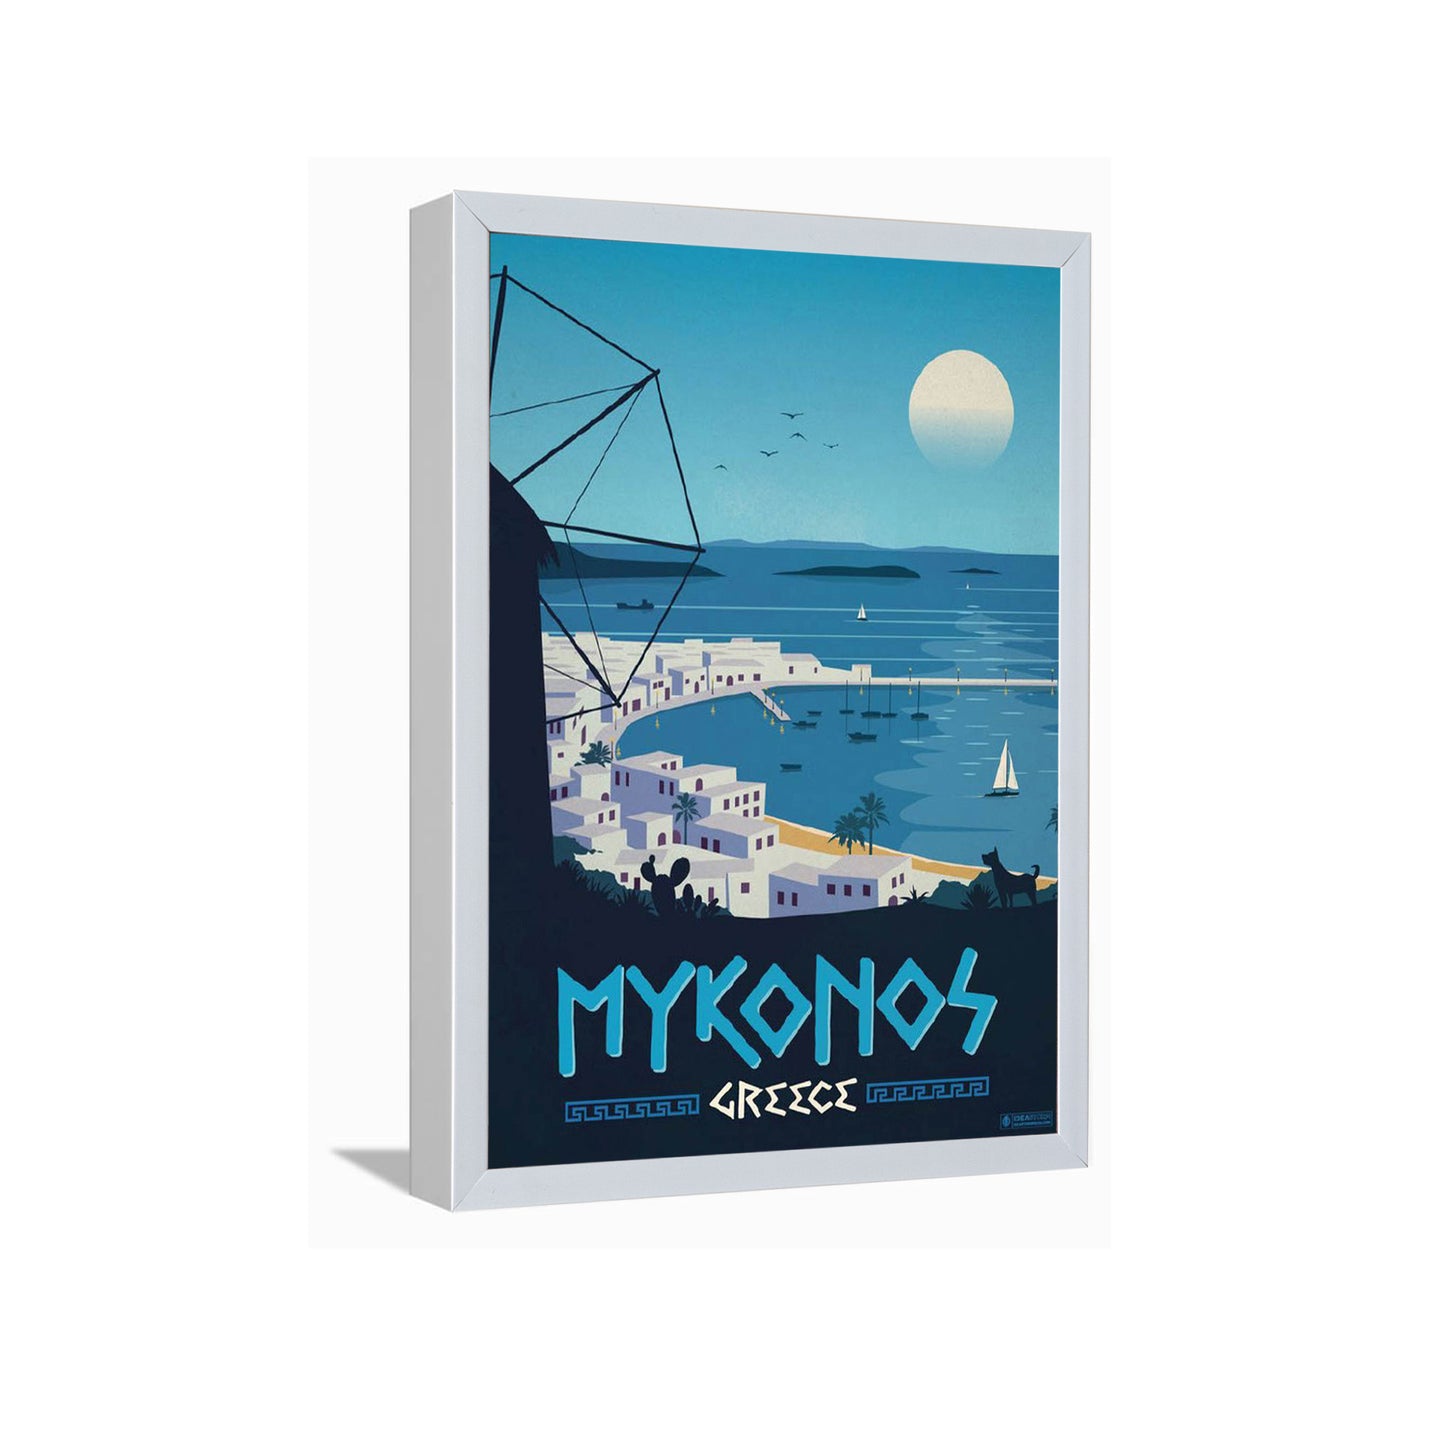 Mykonos Greece---